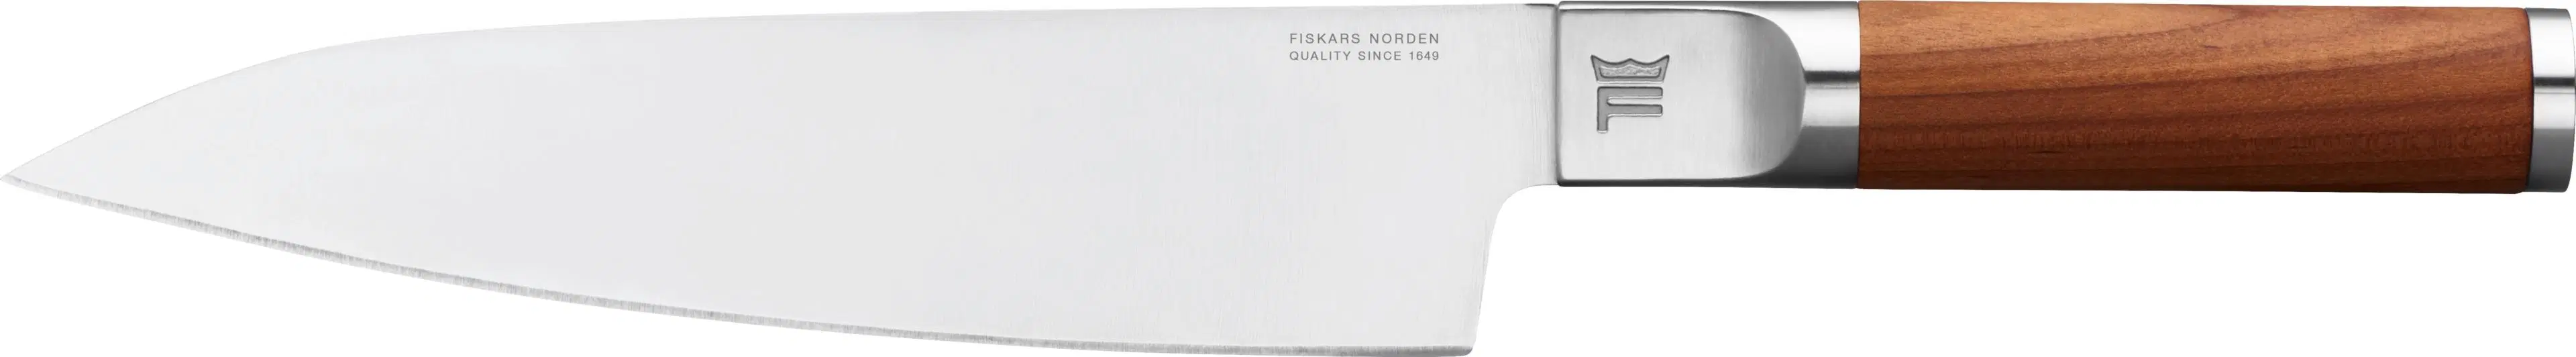 Fiskars Norden iso kokinveitsi